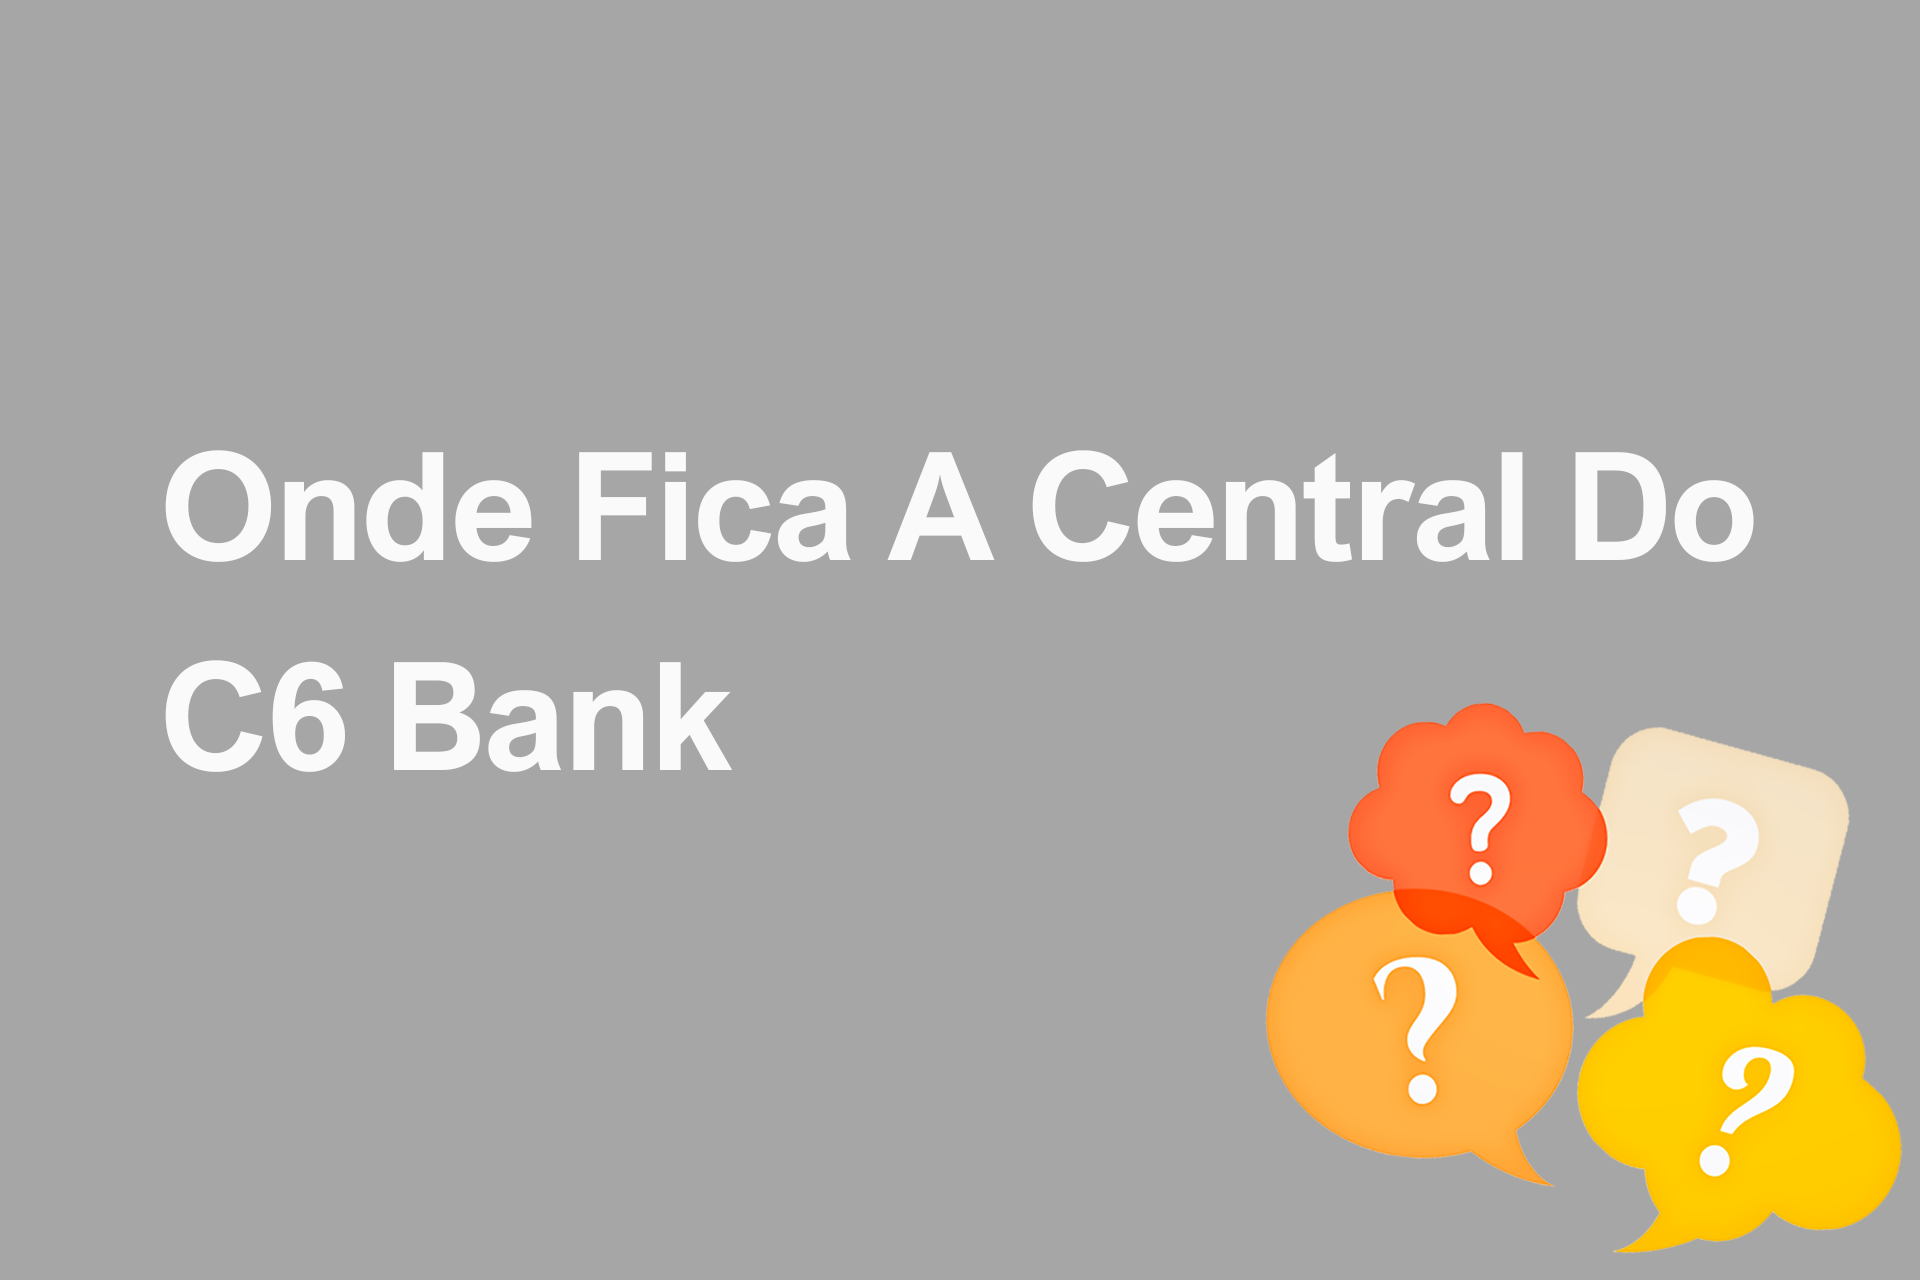 Onde Fica A Central Do C6 Bank?